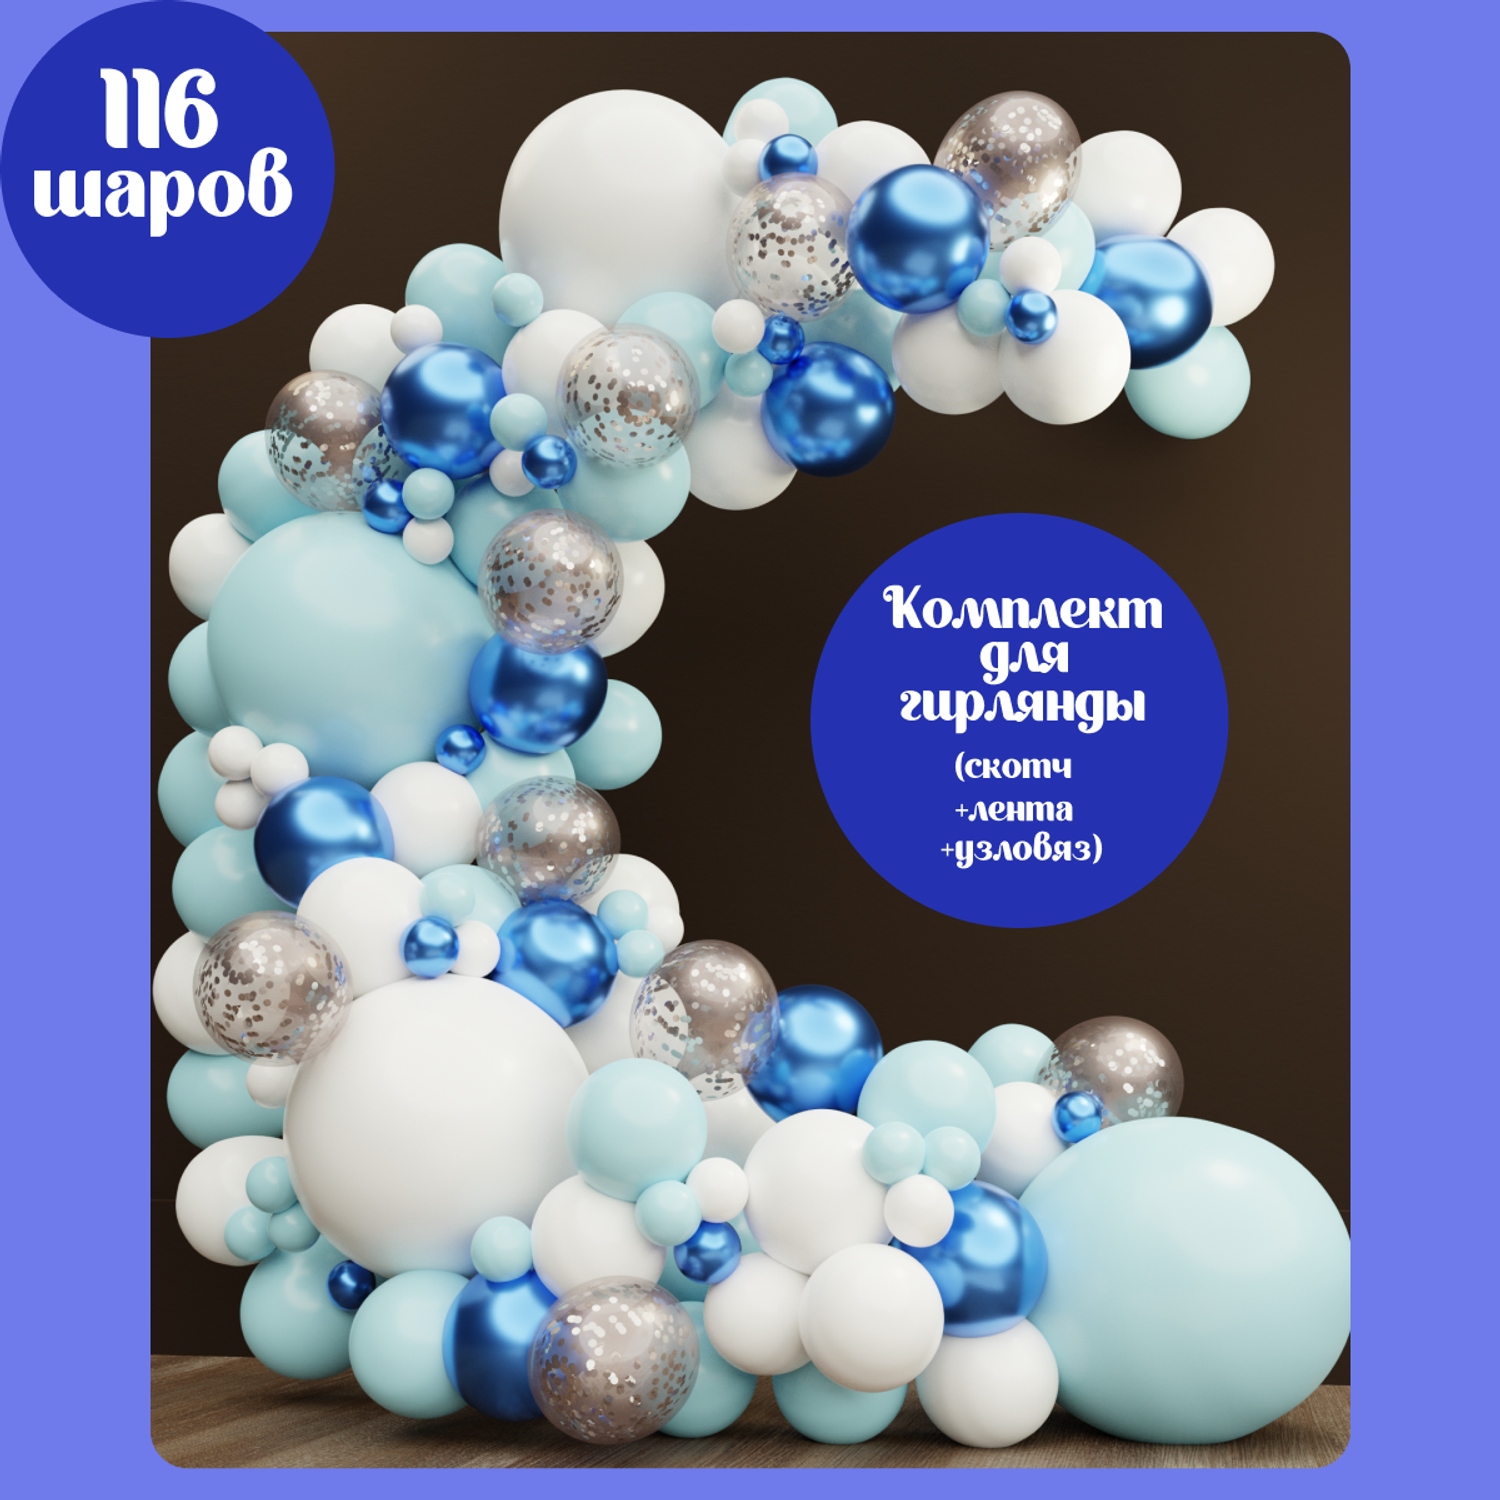 Цифры из шариков на подставке Киев | Купить, заказать, цена